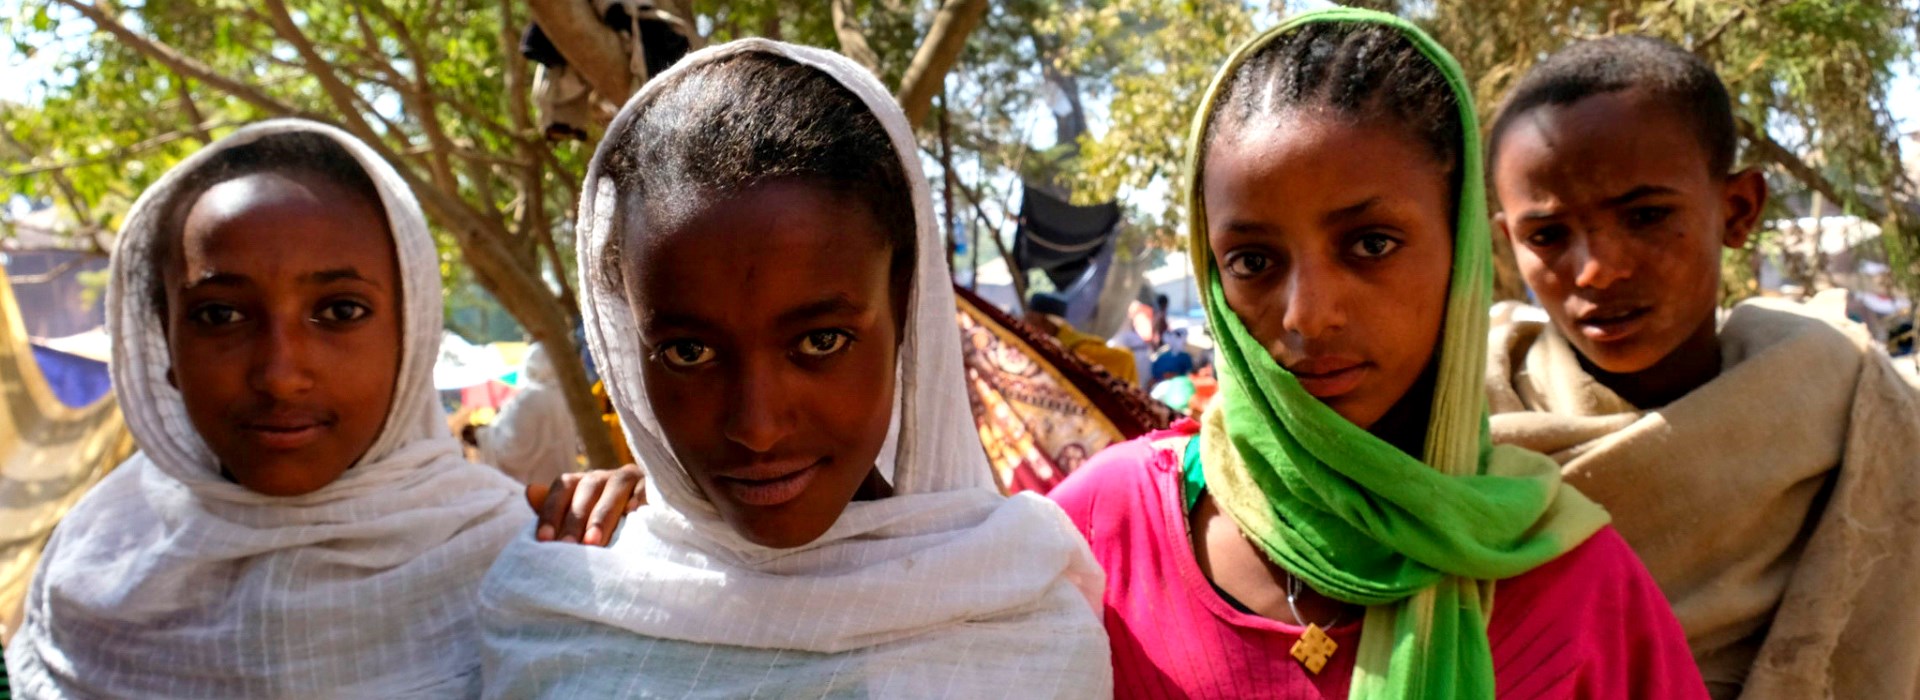 Visiter Adigrat - Ethiopie